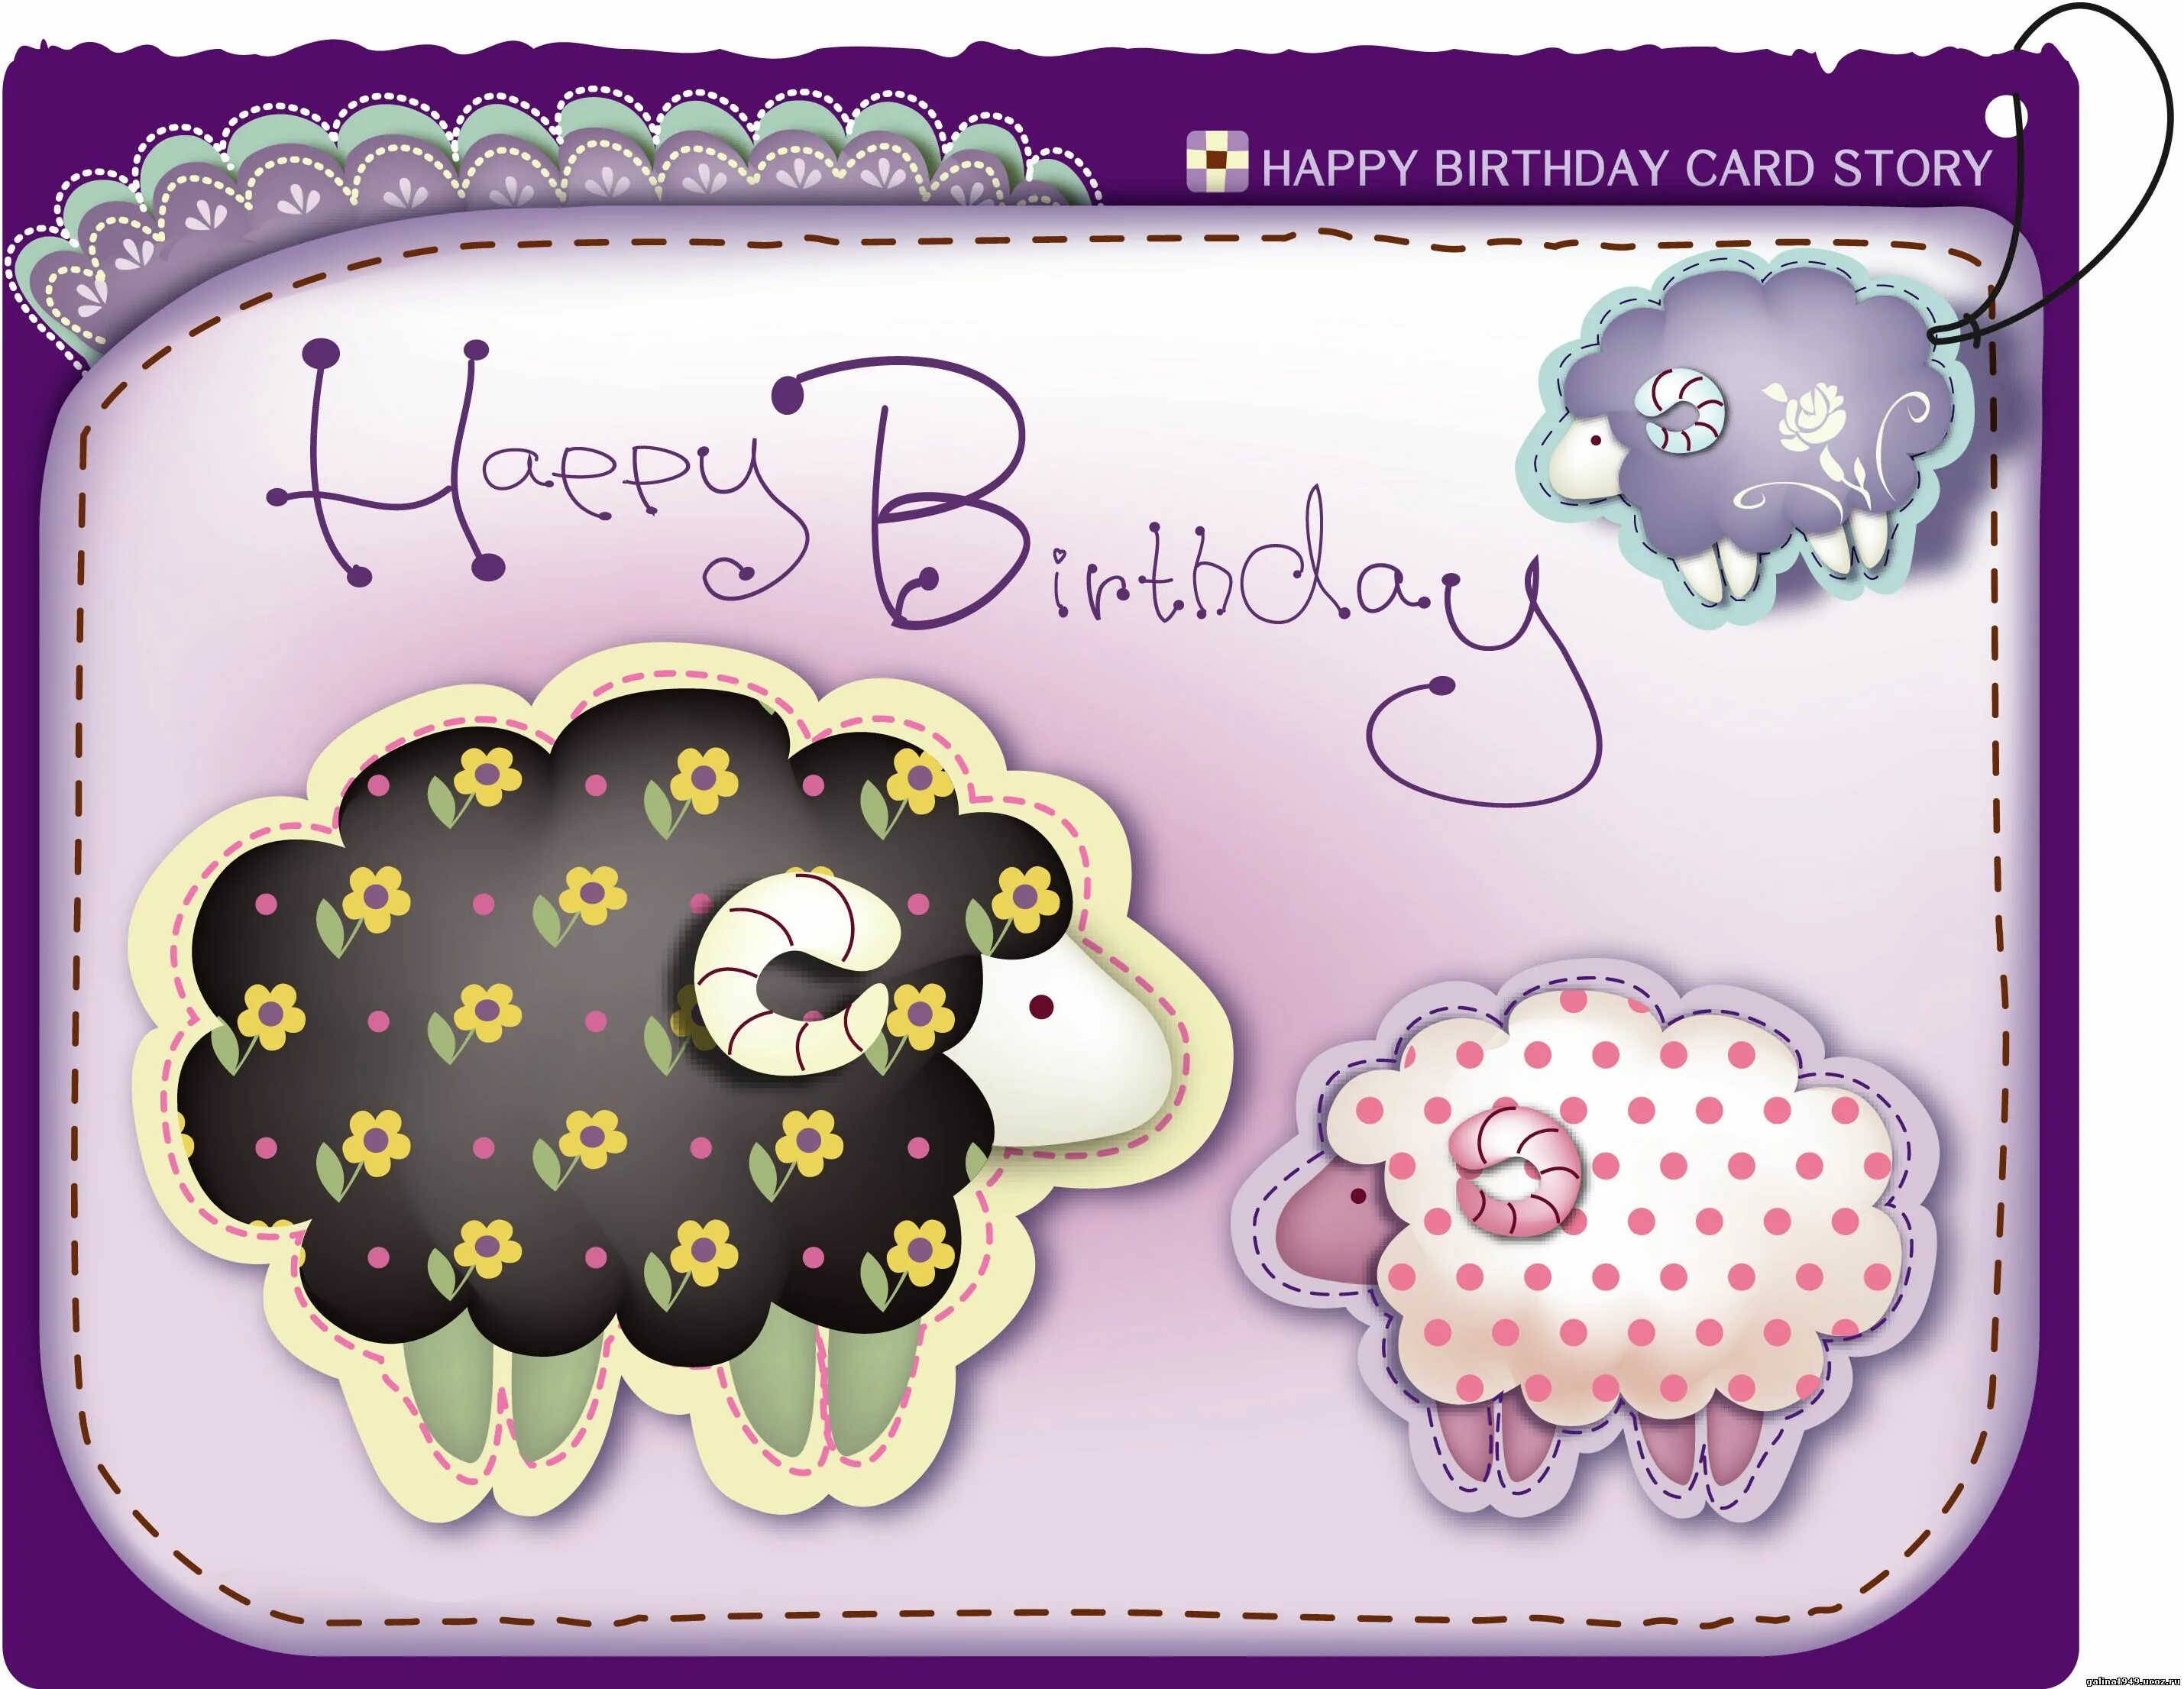 Поздравление овну женщине с днем рождения. Стильные открытки с днем рождения. Креативные открытки с днем рождения. Карточка с днем рождения. Открытки с овечками с днем рождения.